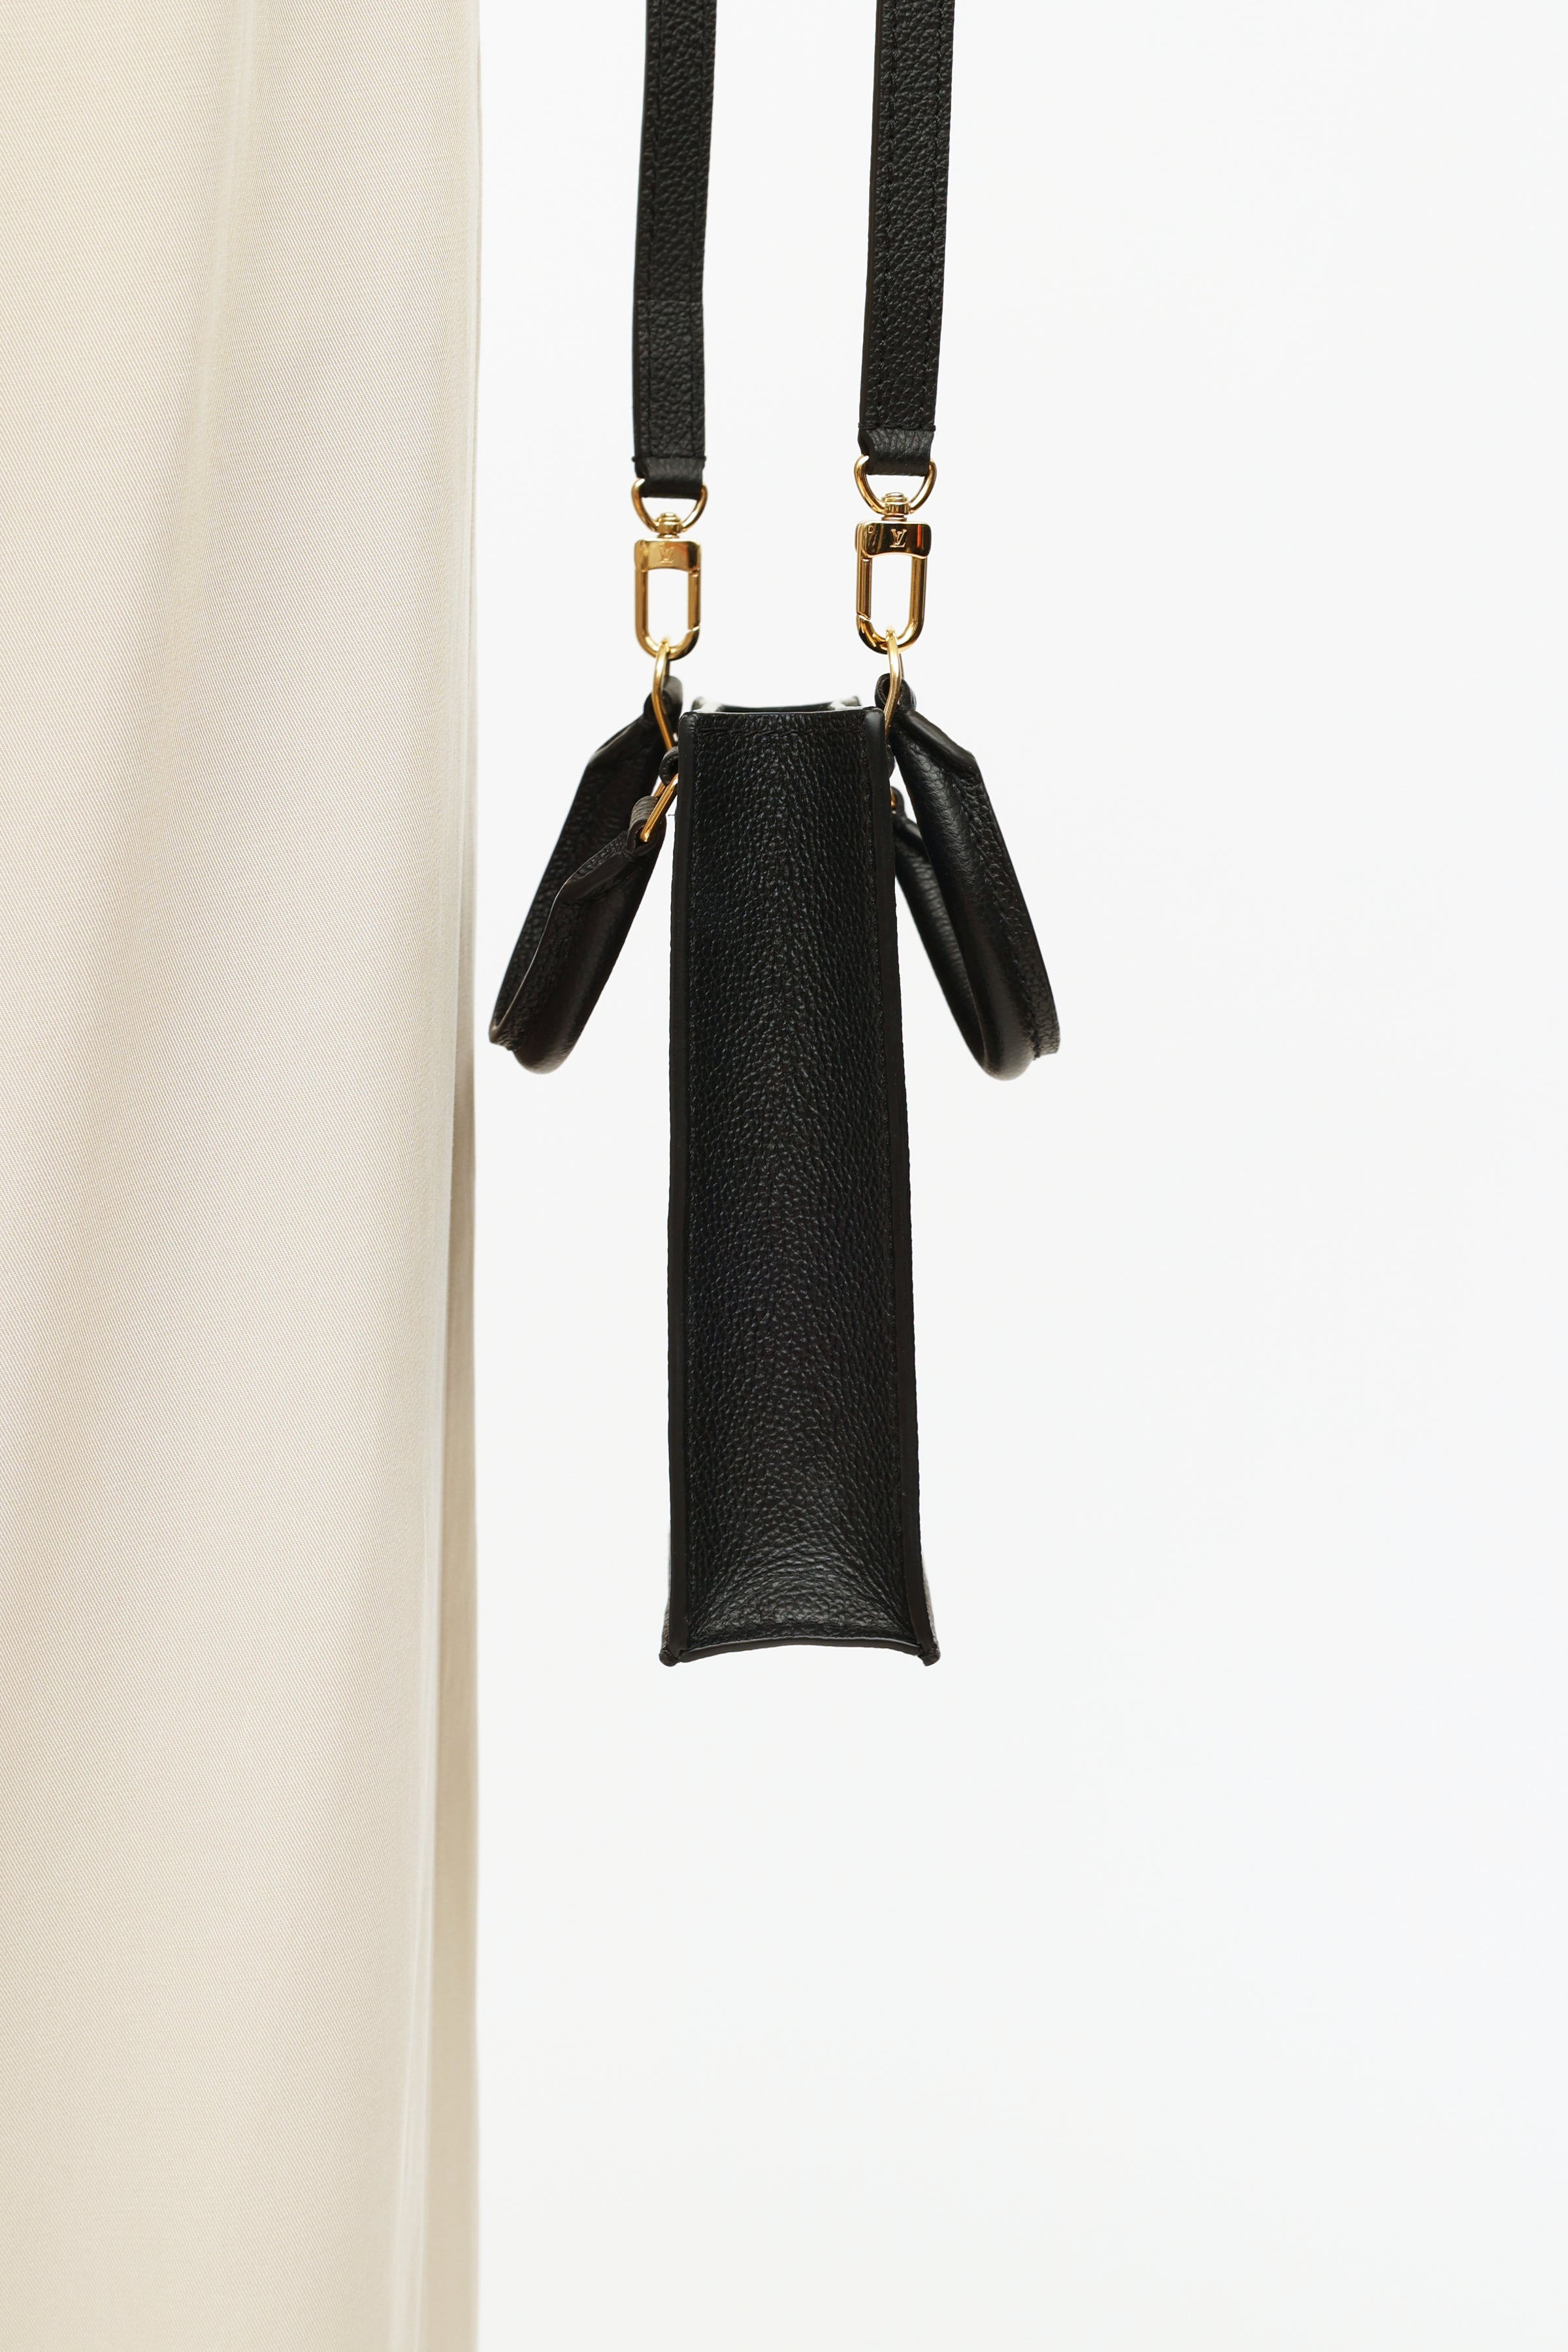 Louis+Vuitton+Petit+Sac+Plat+Crossbody+Black+Leather+Monogram+Empreinte for  sale online